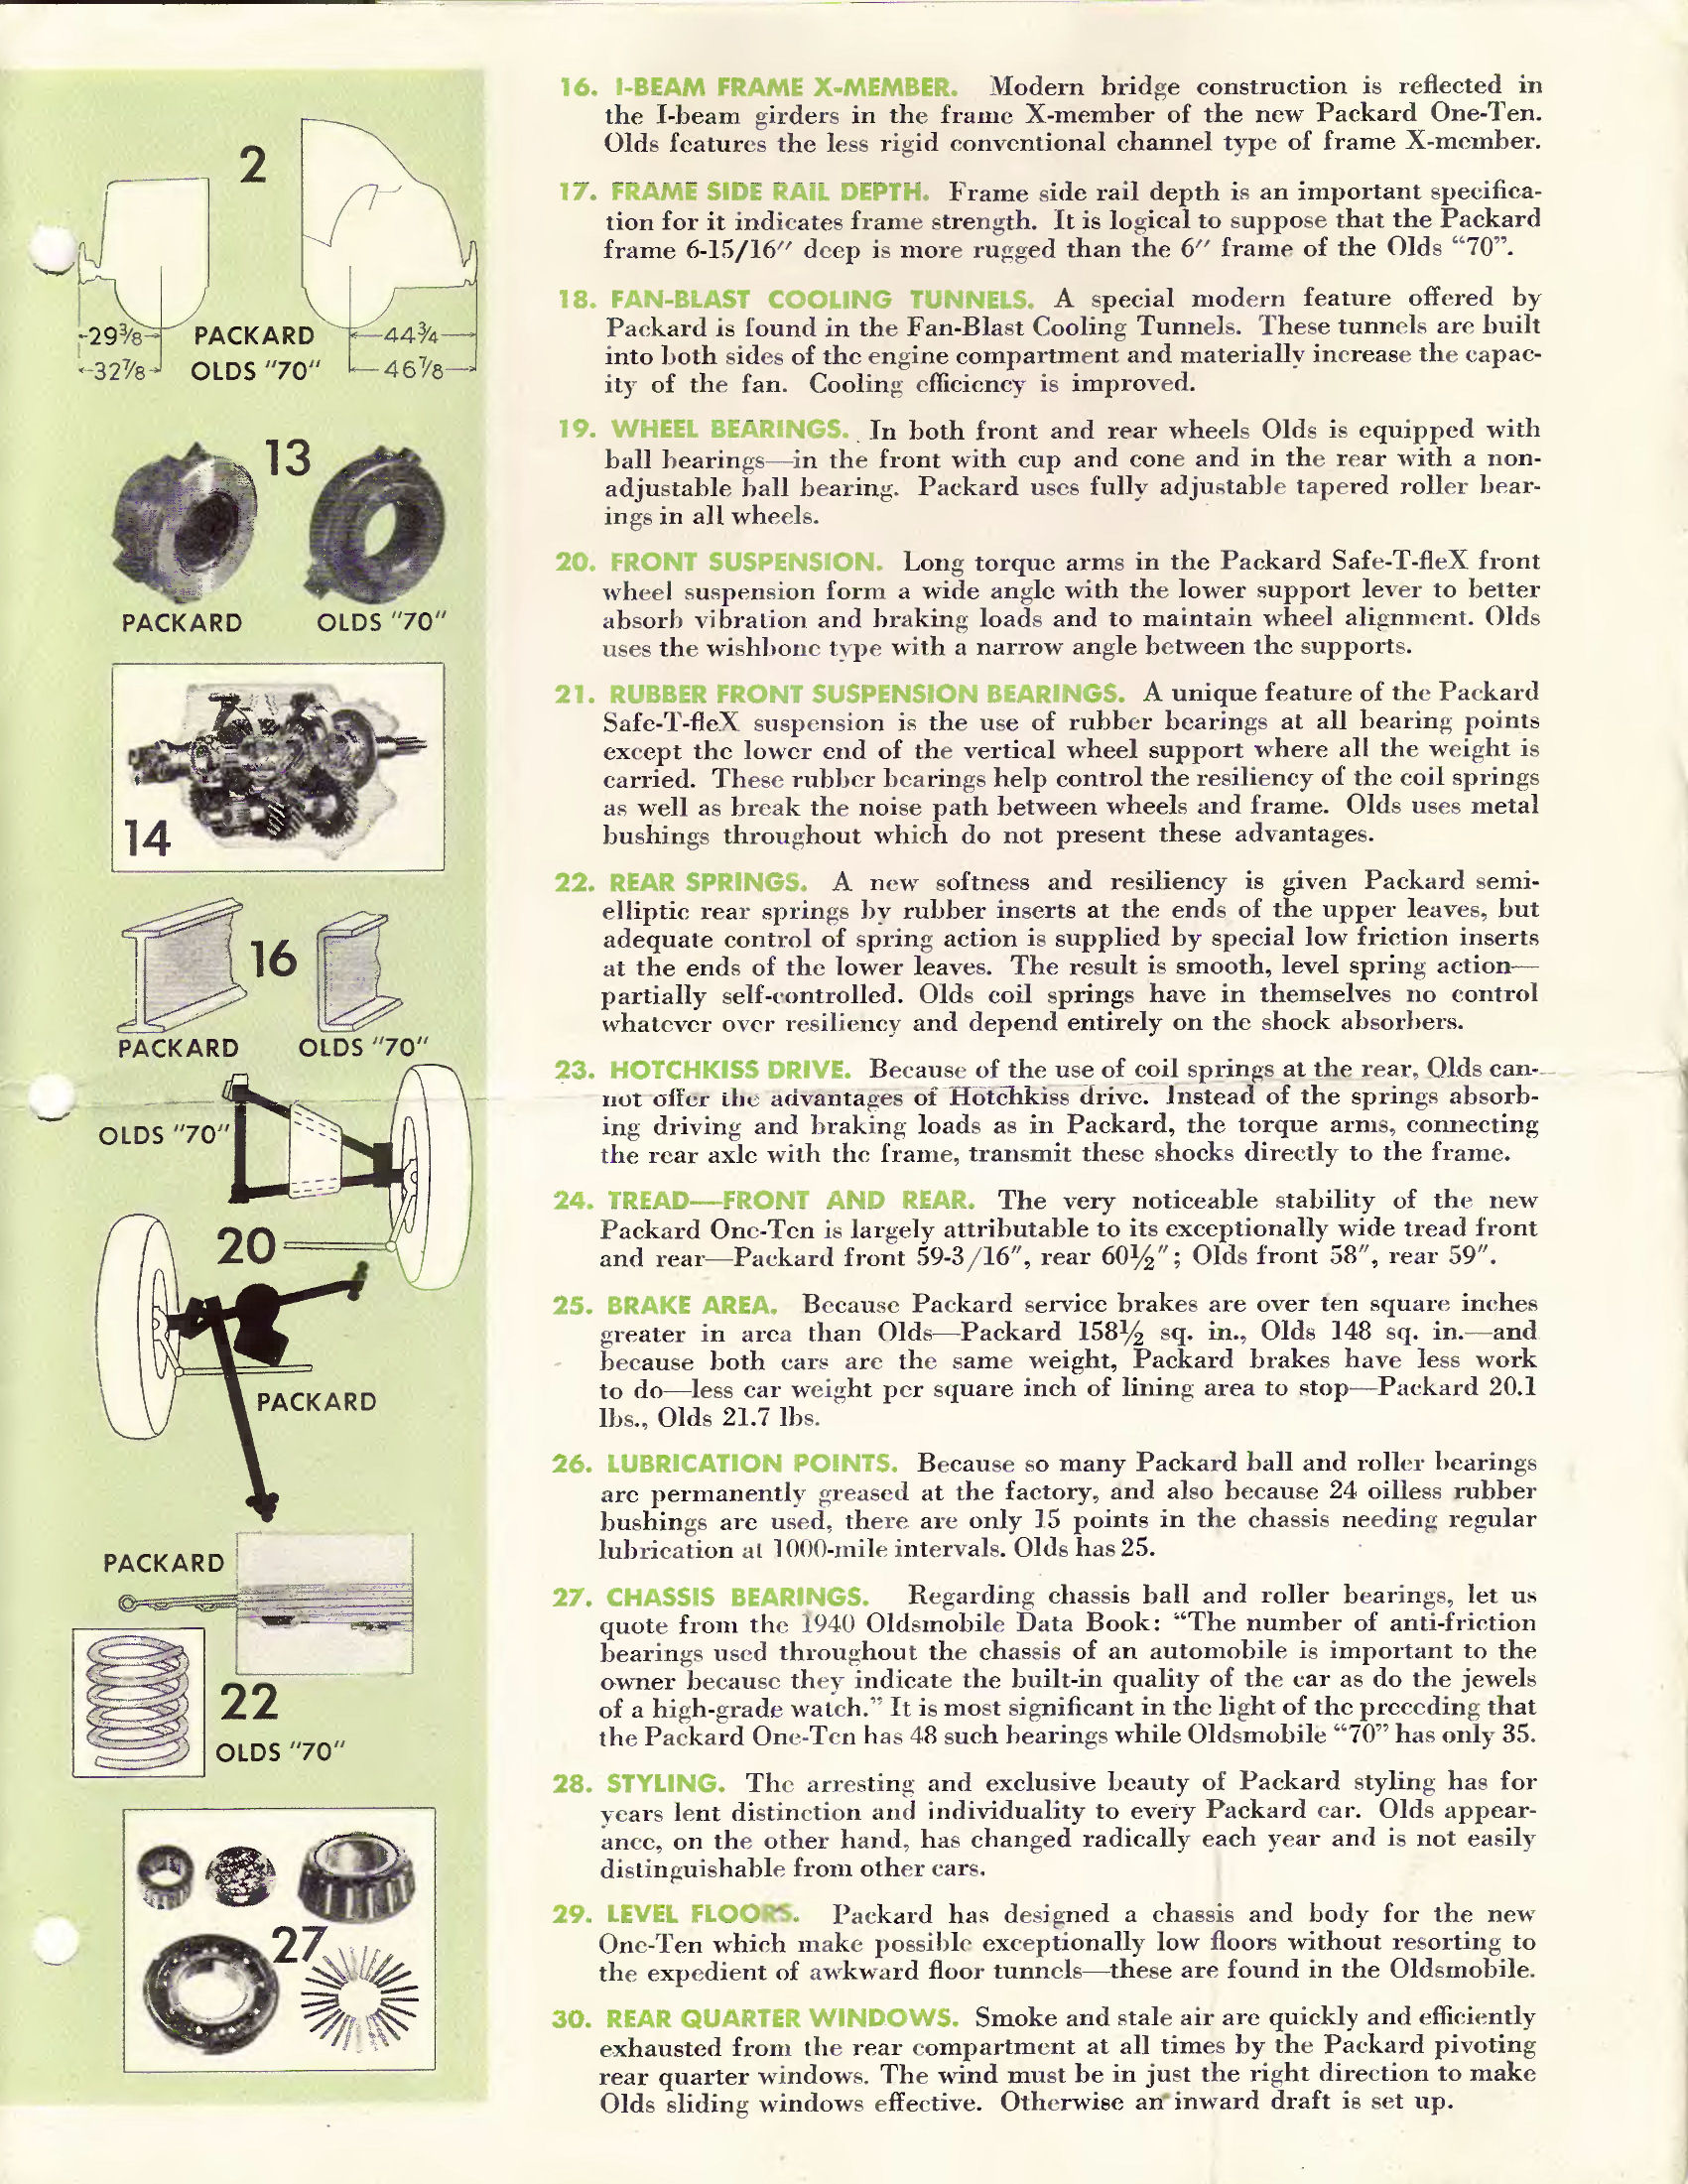 1940 Packard vs Oldsmobile Comparison Folder Page 4